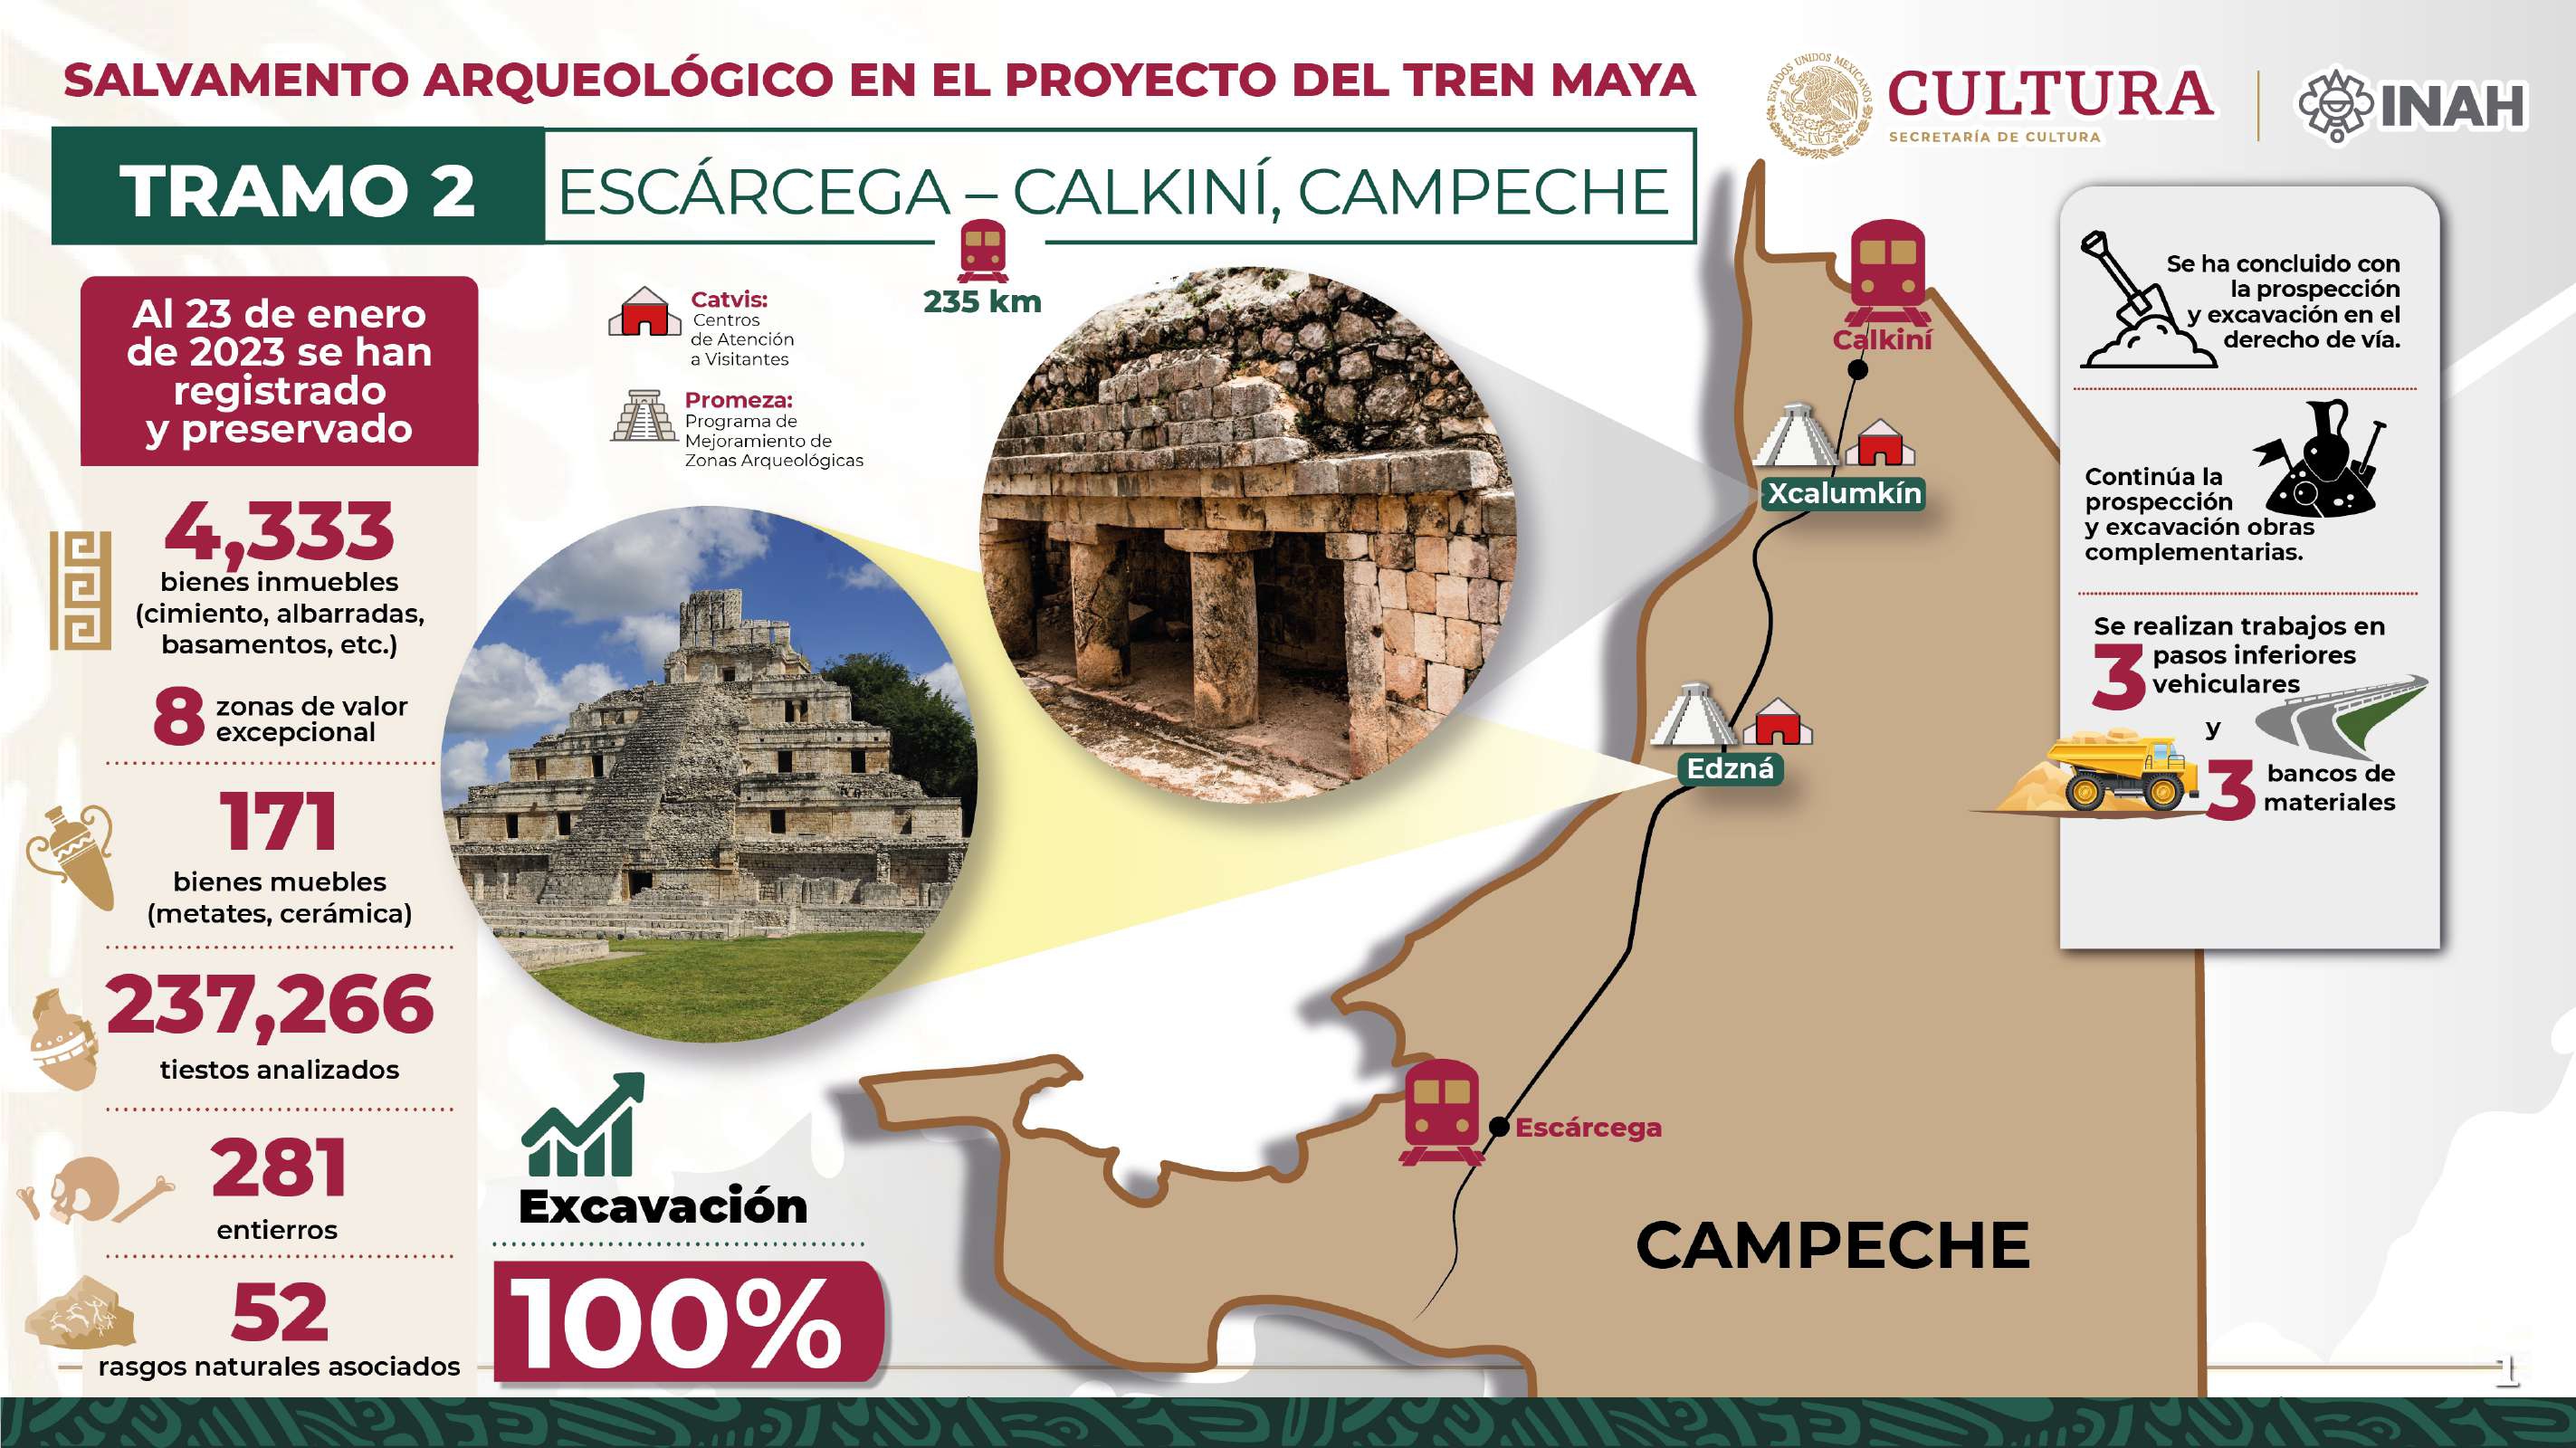 e informó que se realizan más de 700 obras complementarias al Tramo 2 del Tren Maya, que va de Escárcega a Calkiní (INAH)